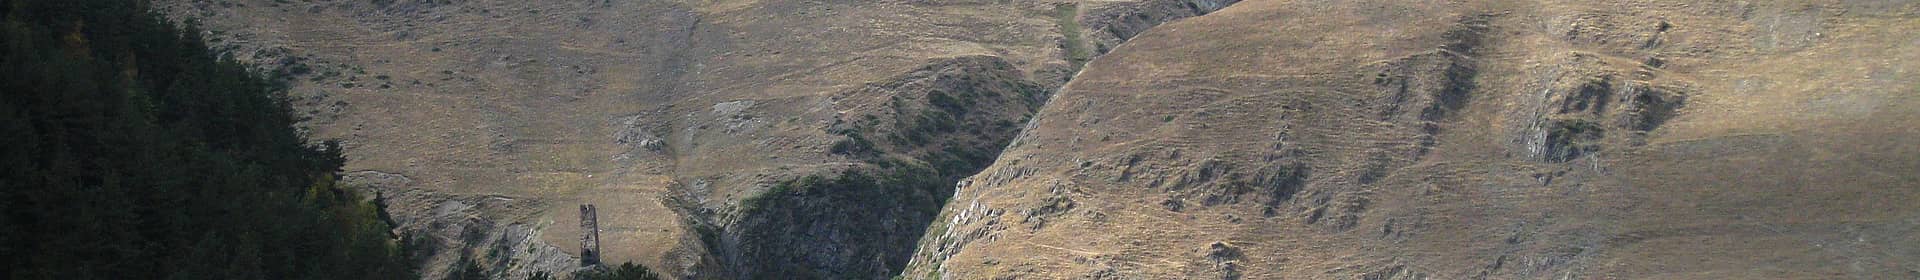 Vallée de Pirikiti